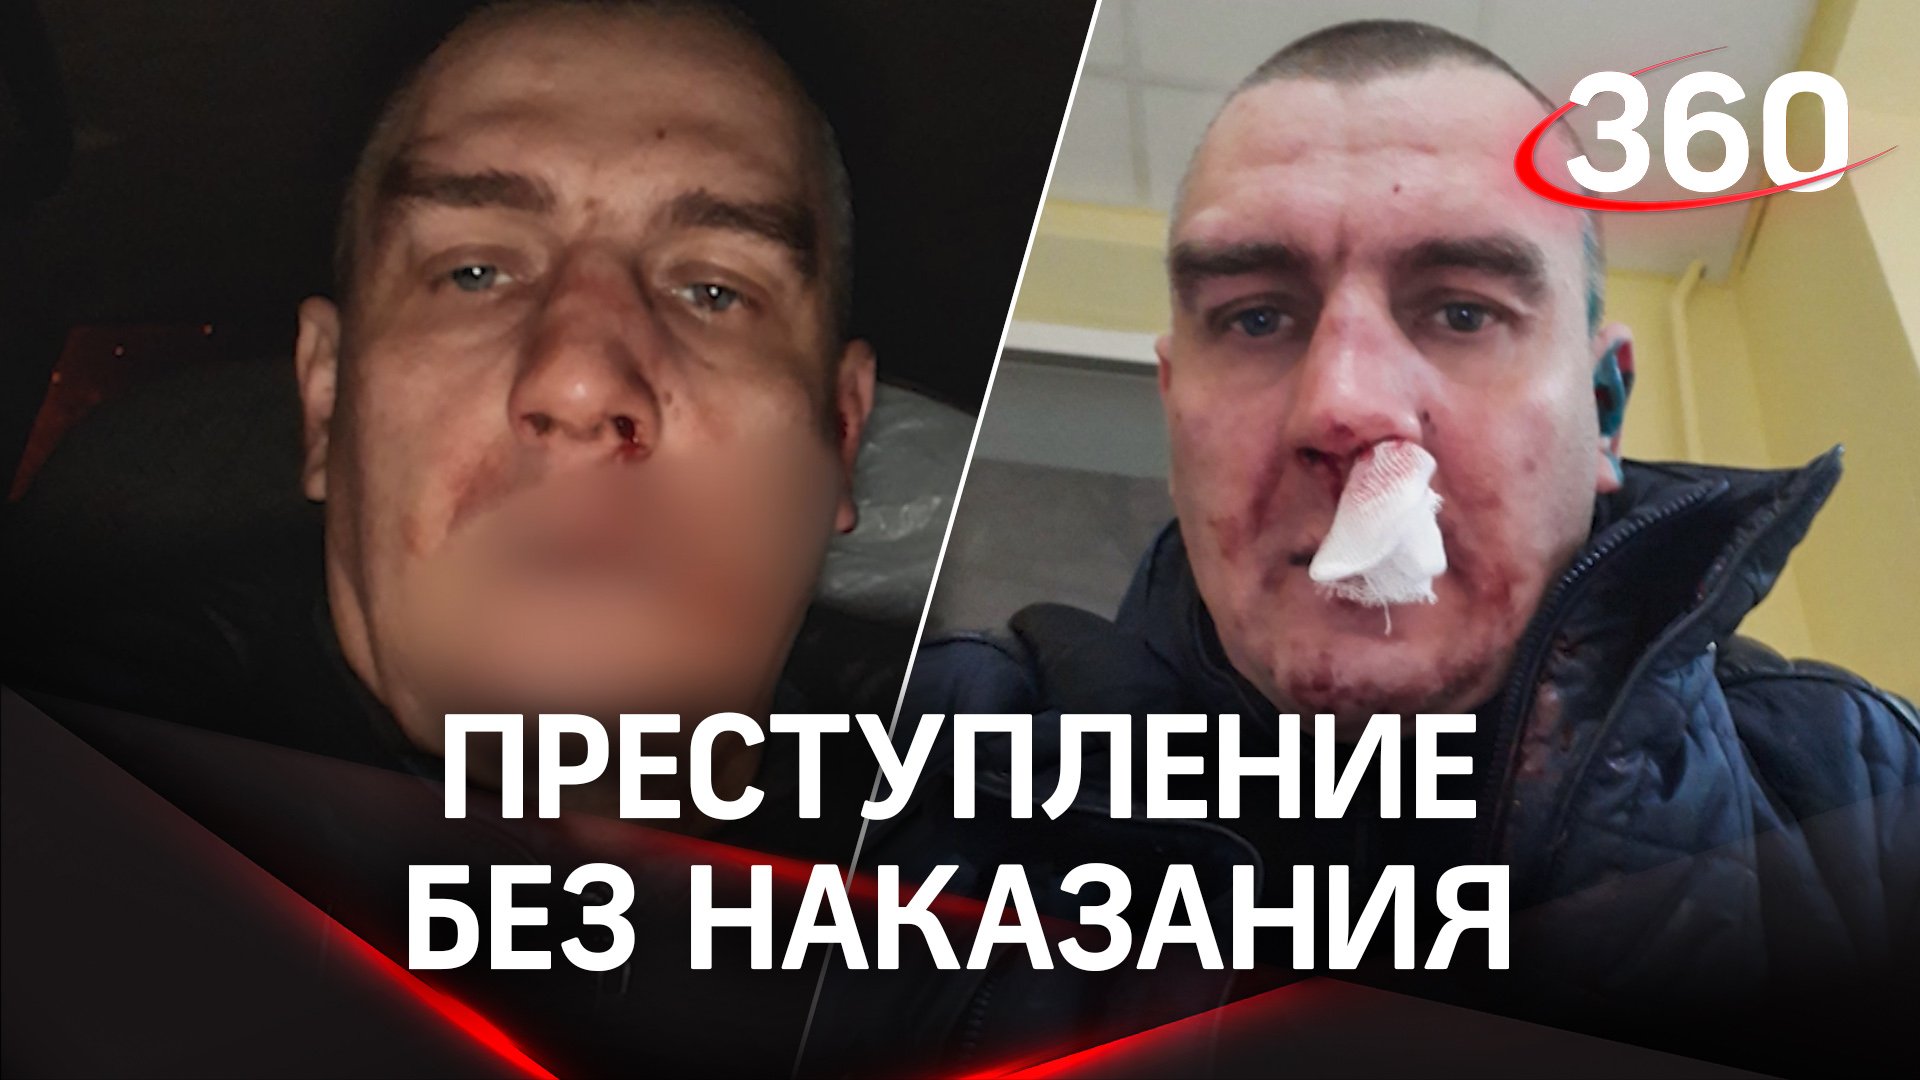 «Преступление без наказания» - В Москве избитый бизнесмен не может добиться правосудия